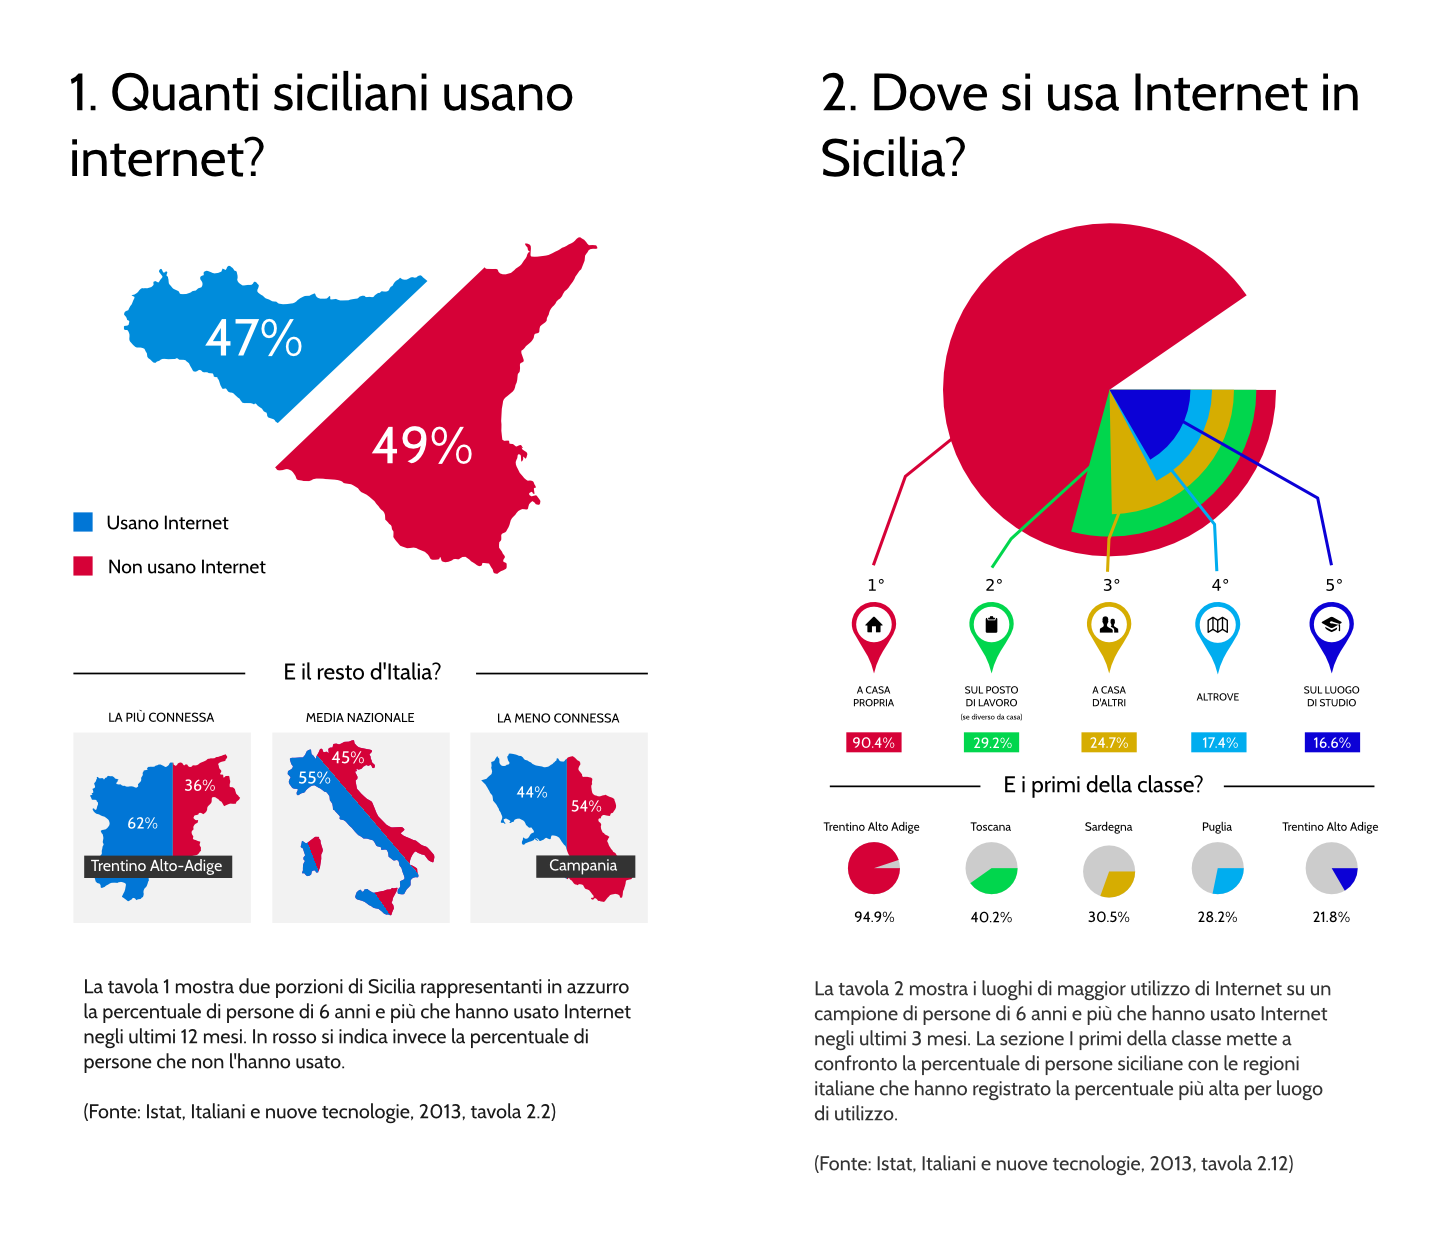 Infografiche: Quanti siciliani usano internet? Dove si usa internet in Sicilia?